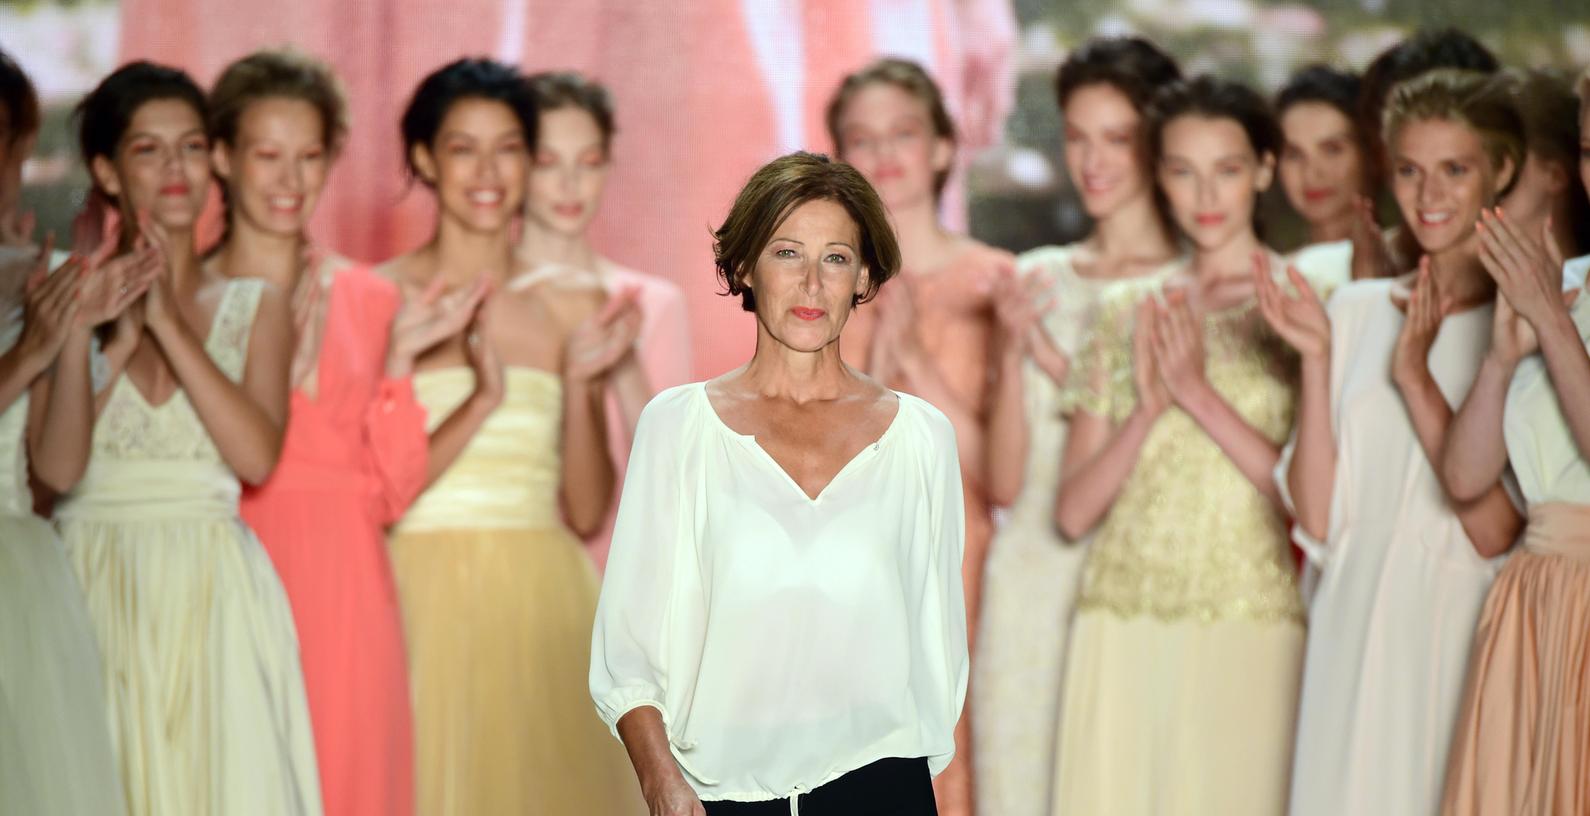 Fränkische Designerin kreiert Mode mit Wohlfühlfaktor 